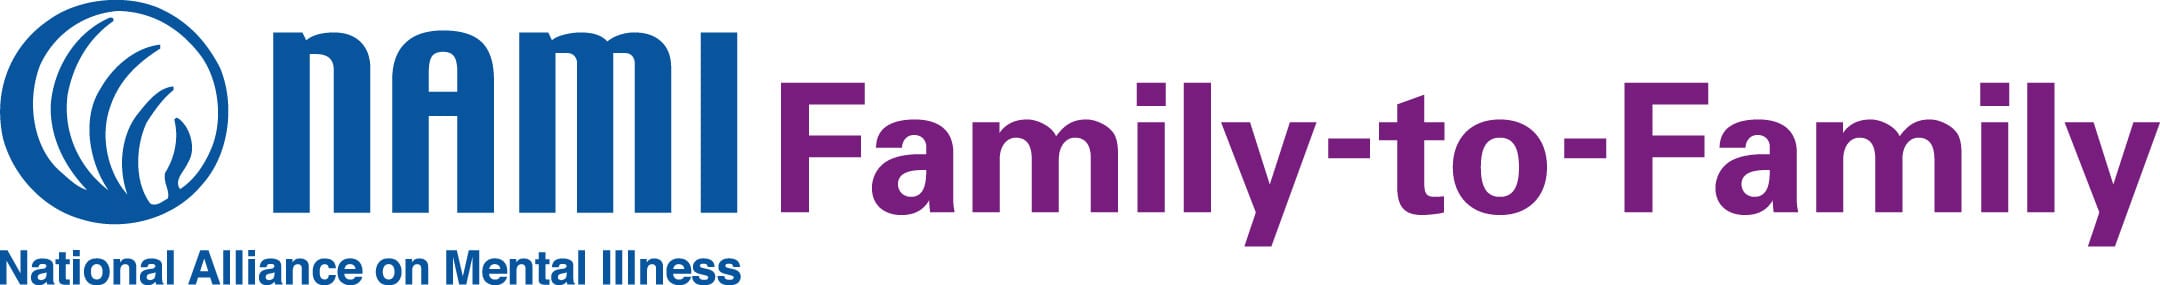 NAMI Family-to-Family logo